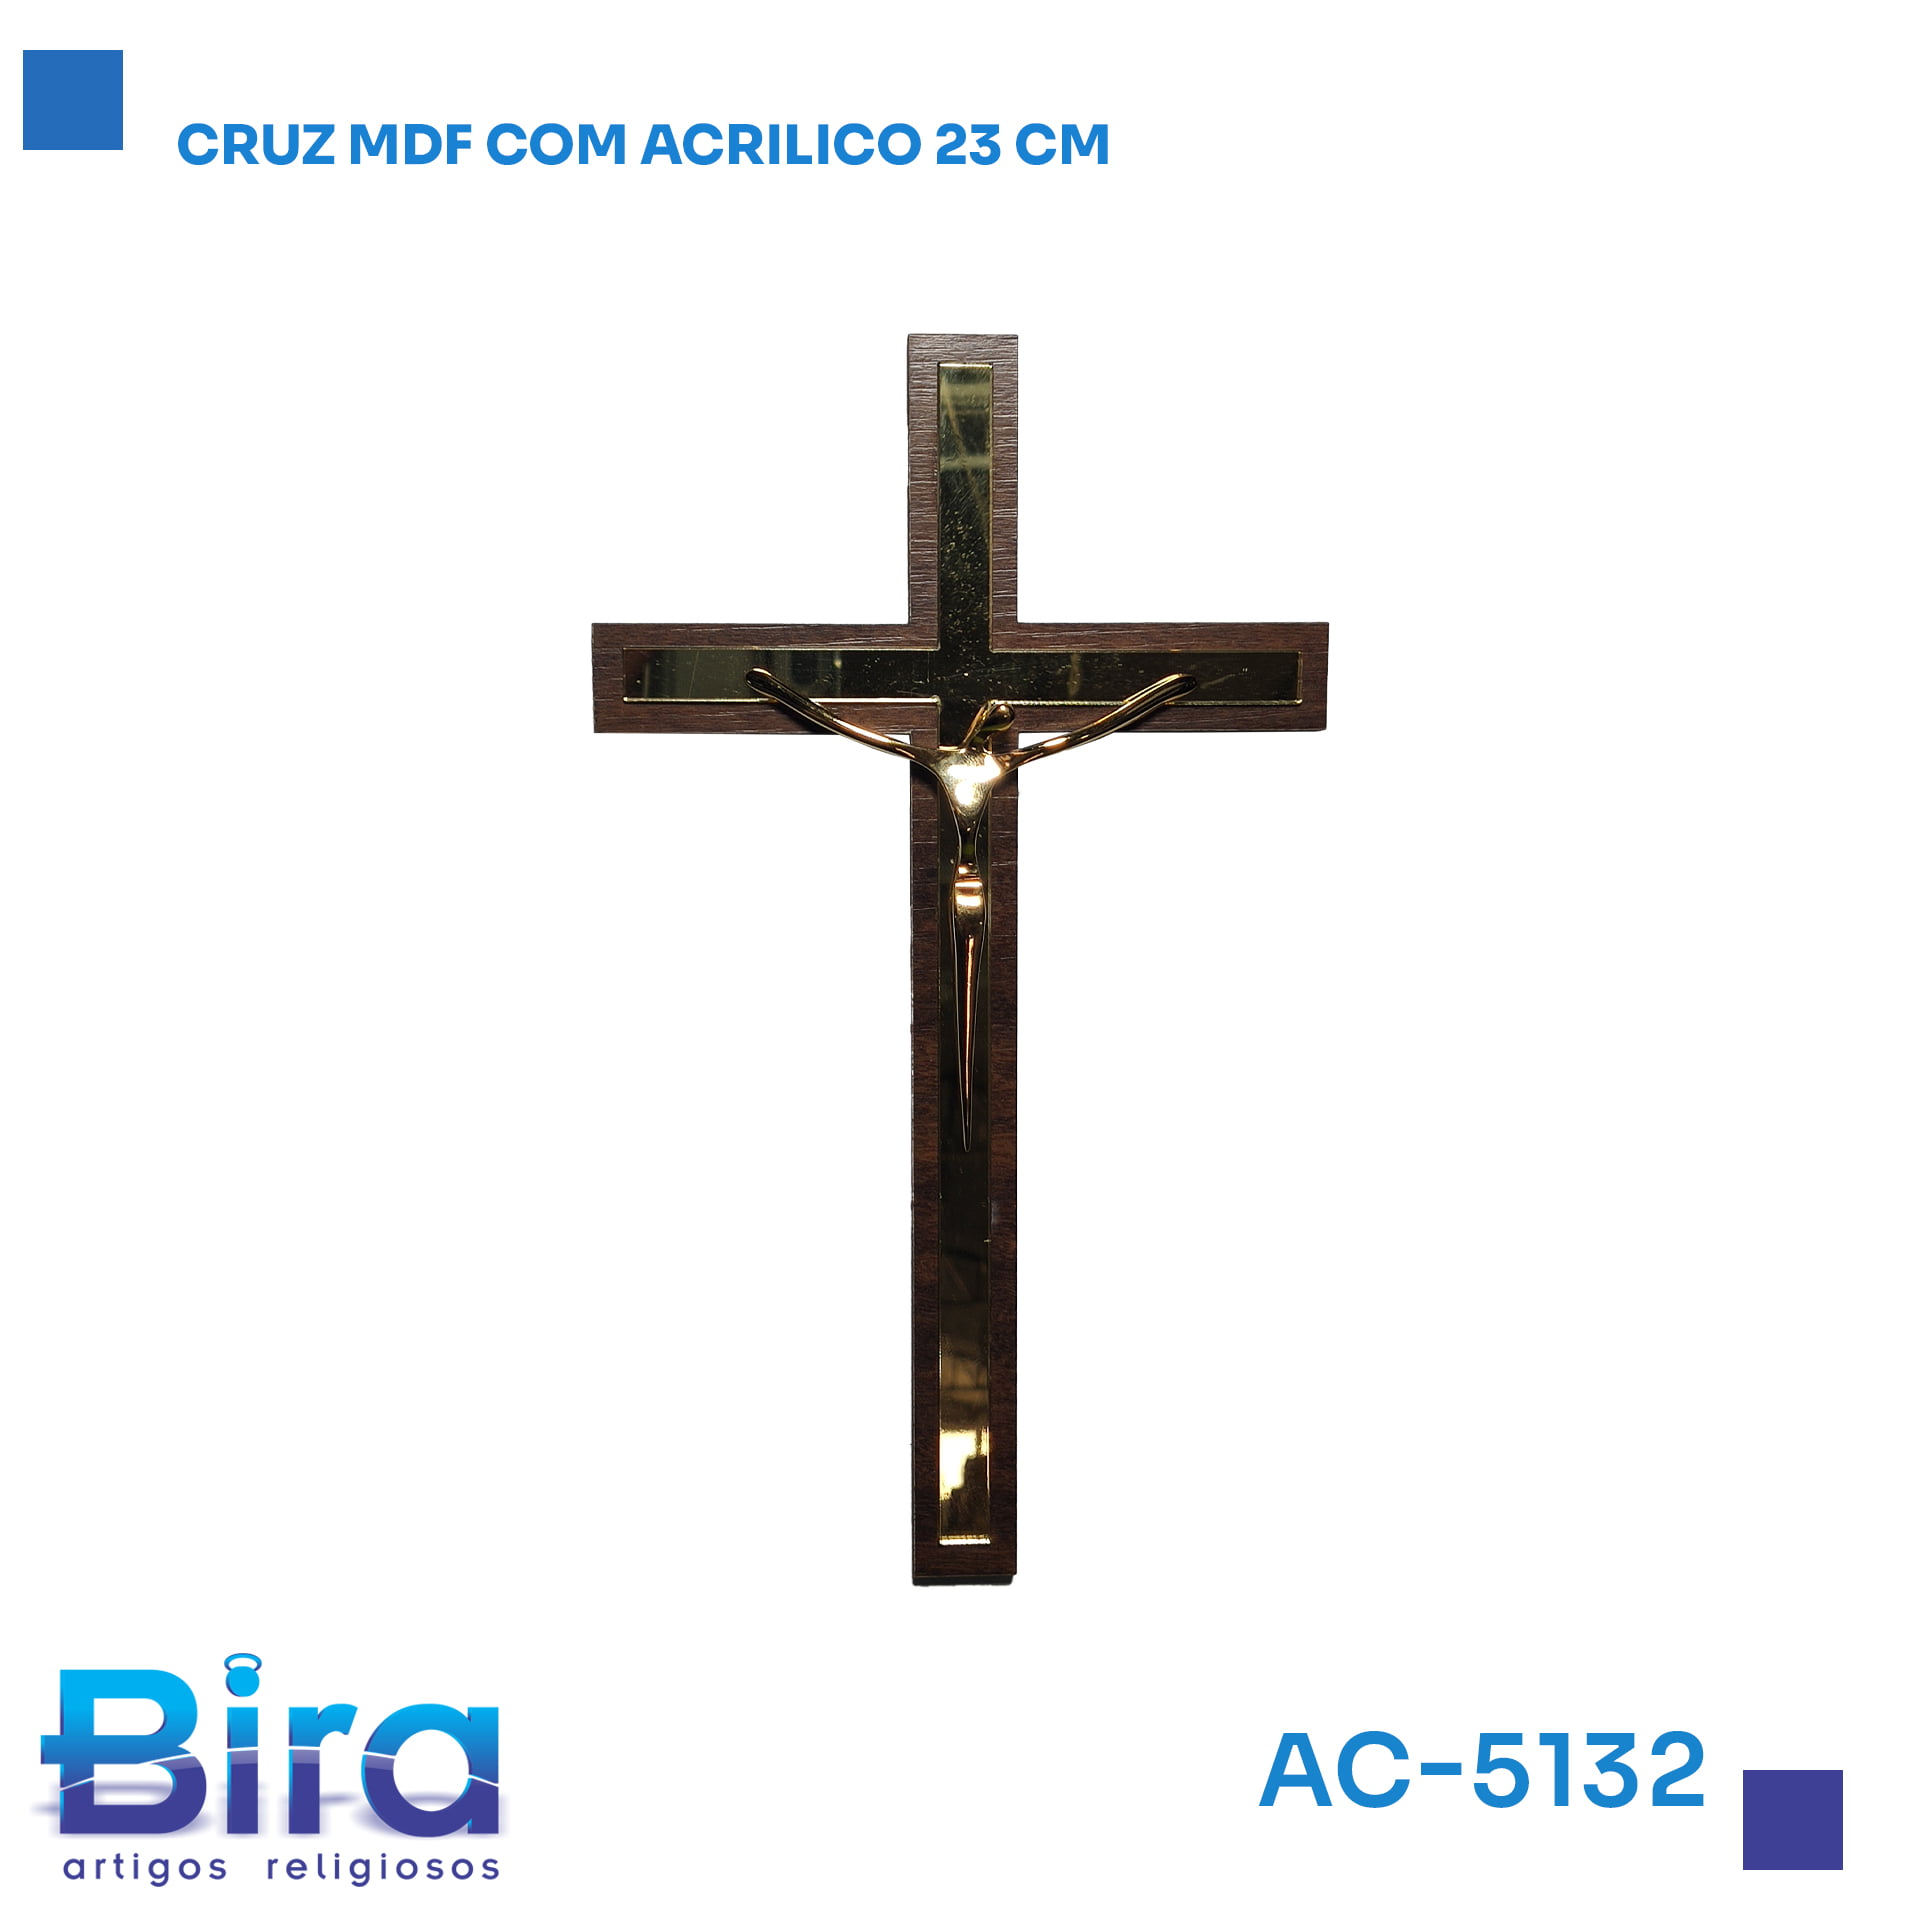 Bira Artigos Religiosos - CRUZ MDF COM ACRILICO 23CM  Cód.: AC-5132